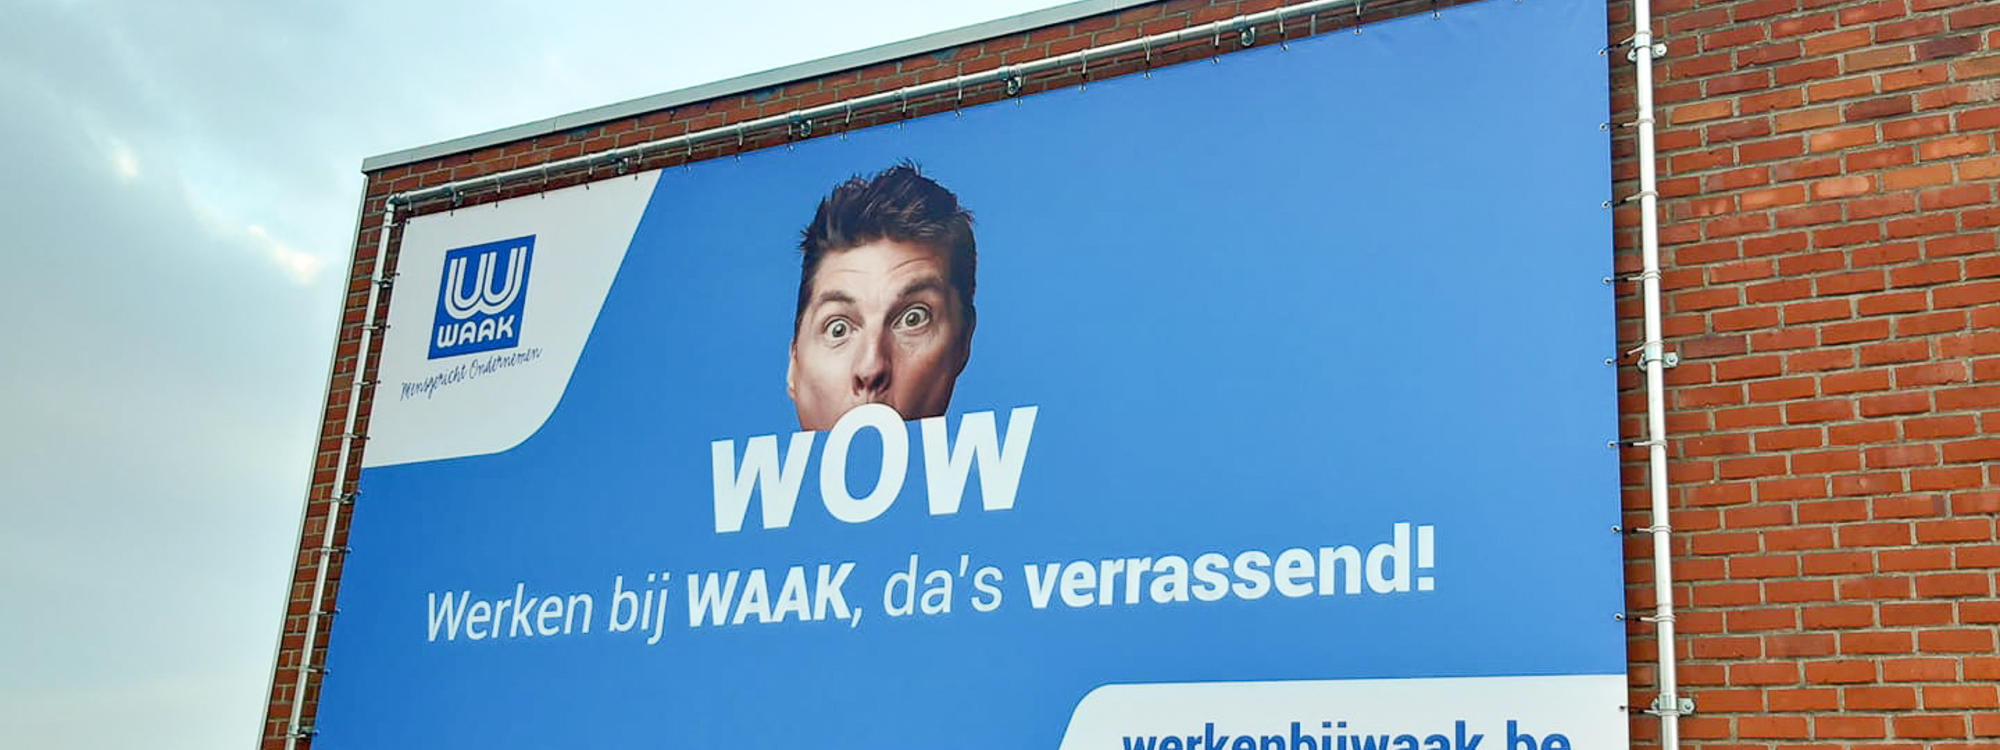 WAAK - wow employer branding